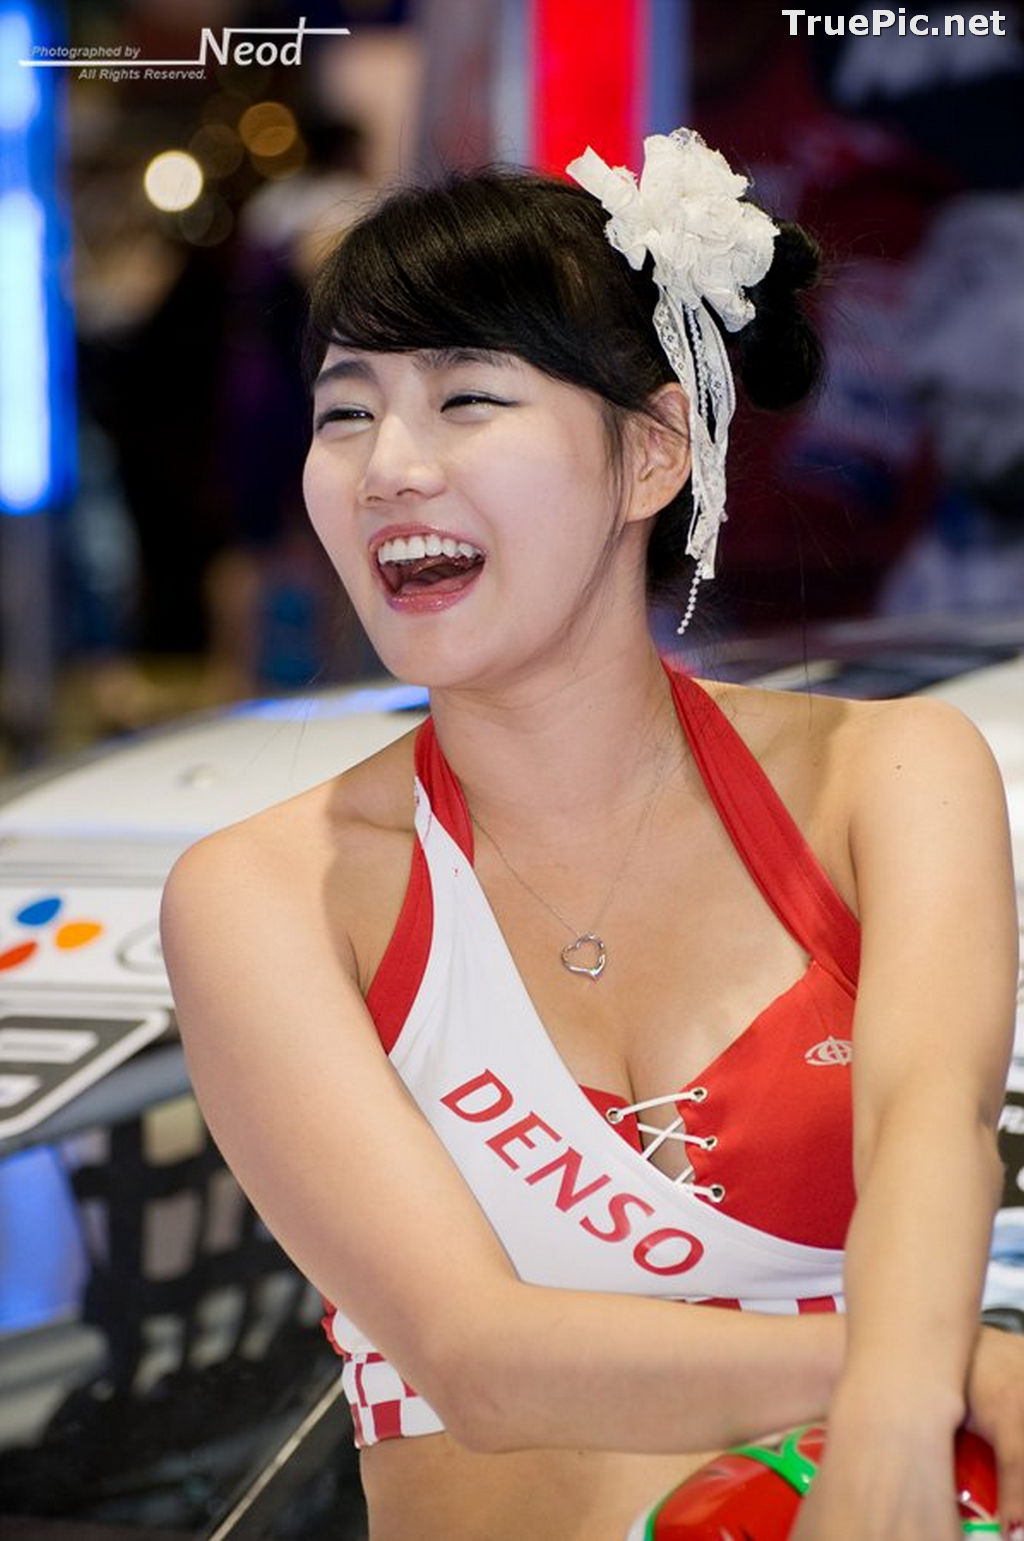 Image Best Beautiful Images Of Korean Racing Queen Han Ga Eun #4 - TruePic.net - Picture-44